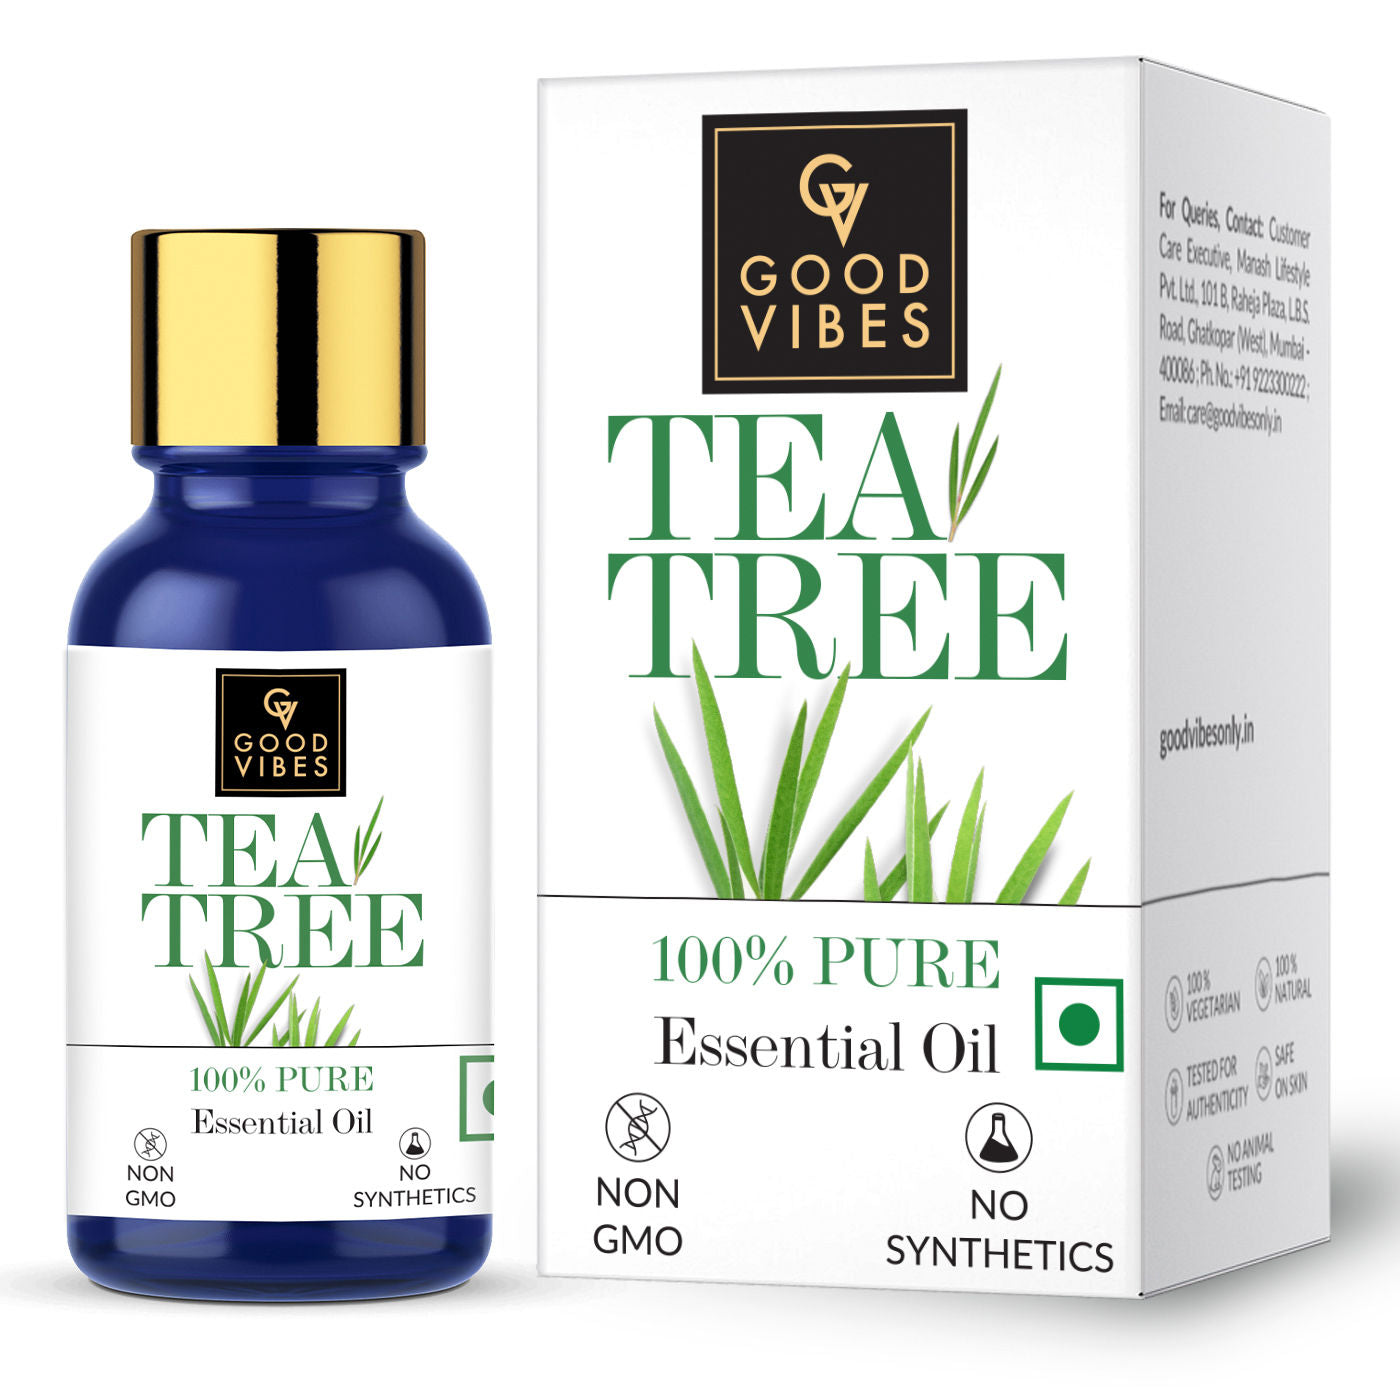 Good Vibes 100% Pure Tea Tree Essential Oil(10 ml) - 1